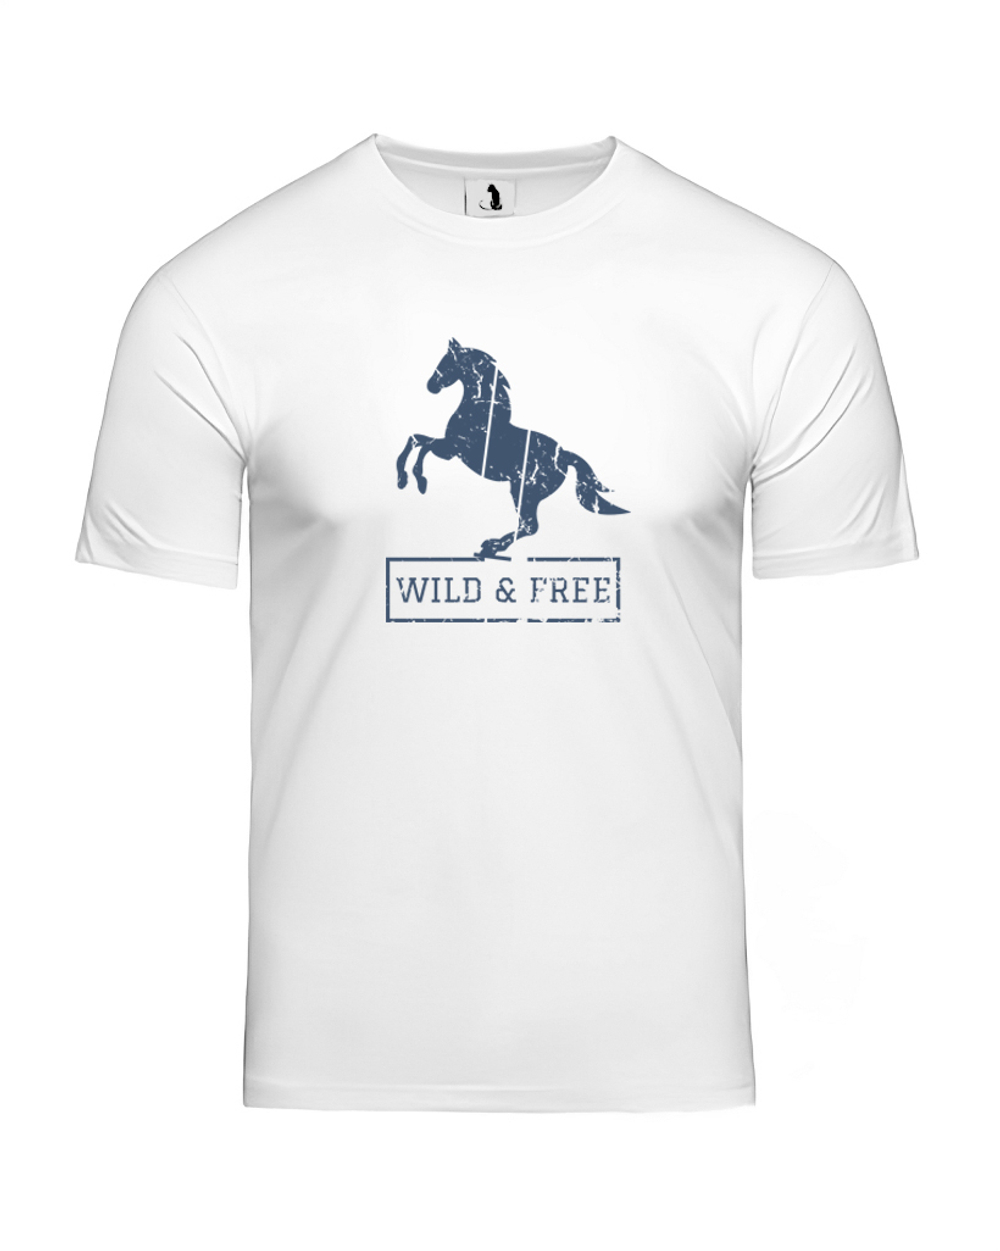 Футболка с лошадью Wild and free прямая белая с синим рисунком